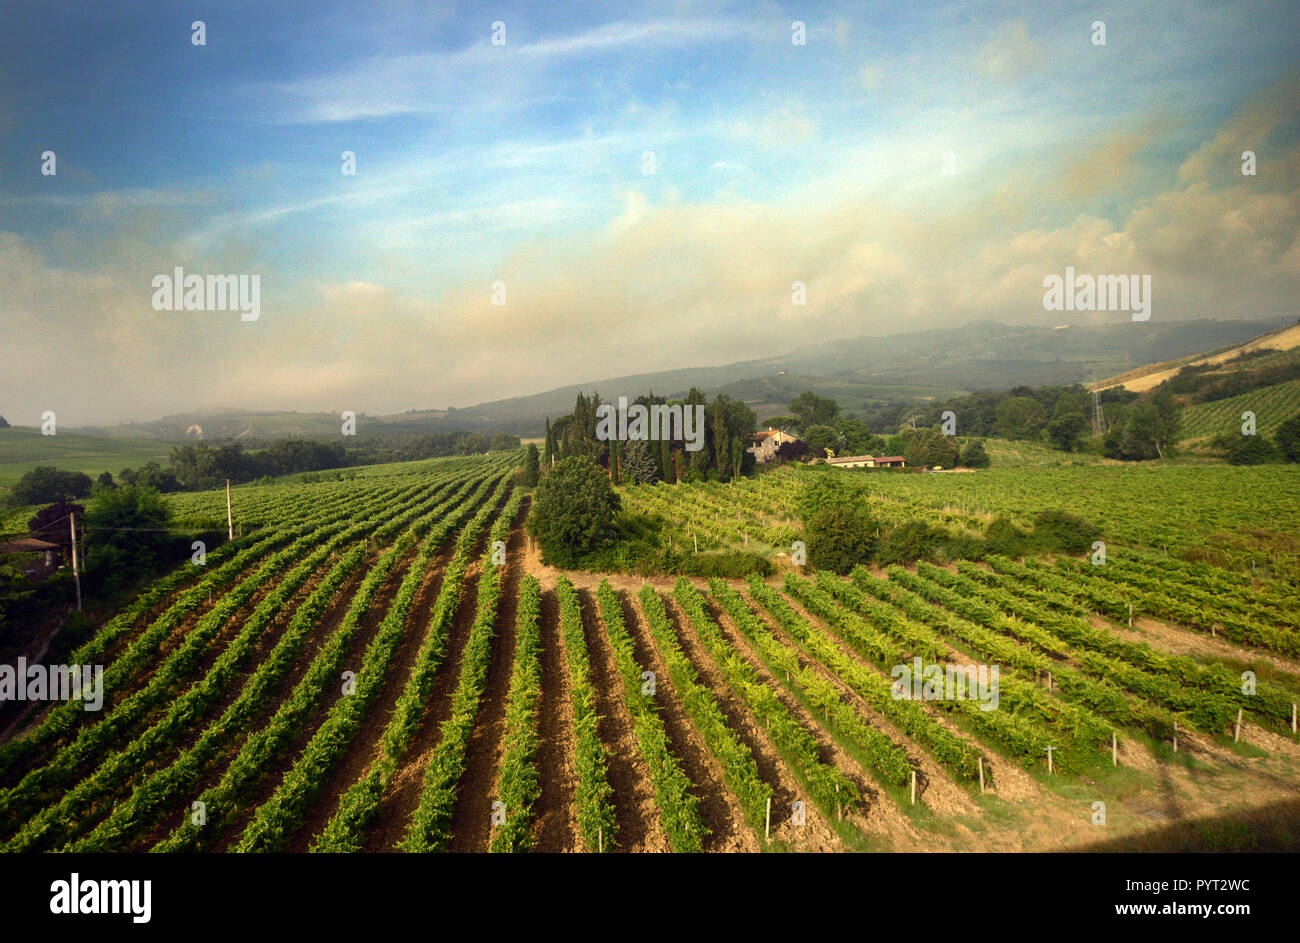 Vinyards in Tuscany, Italy. Stock Photo